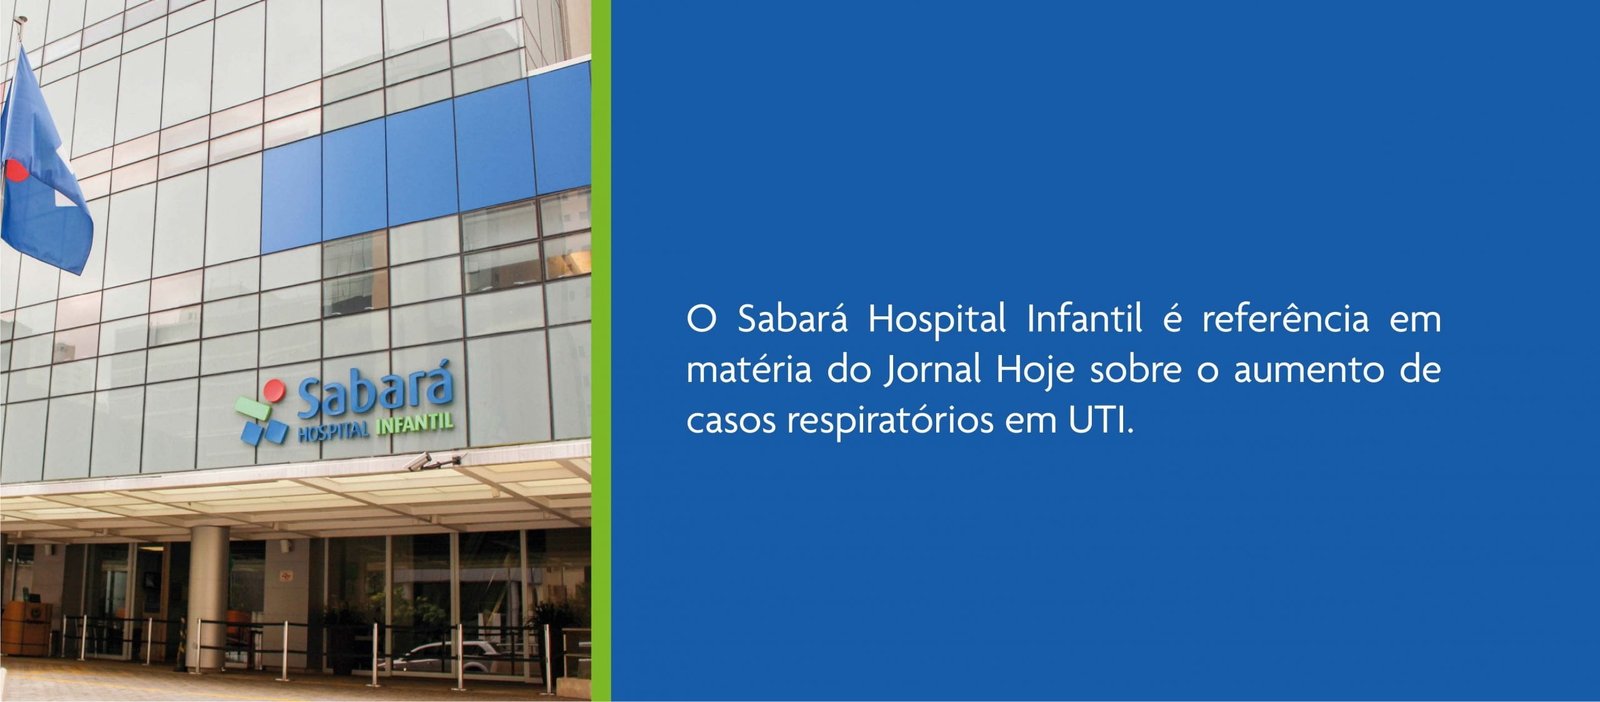 Sabará Hospital Infantil é Referência Em Matéria Do Jornal Hoje Hospital Sabará 0102